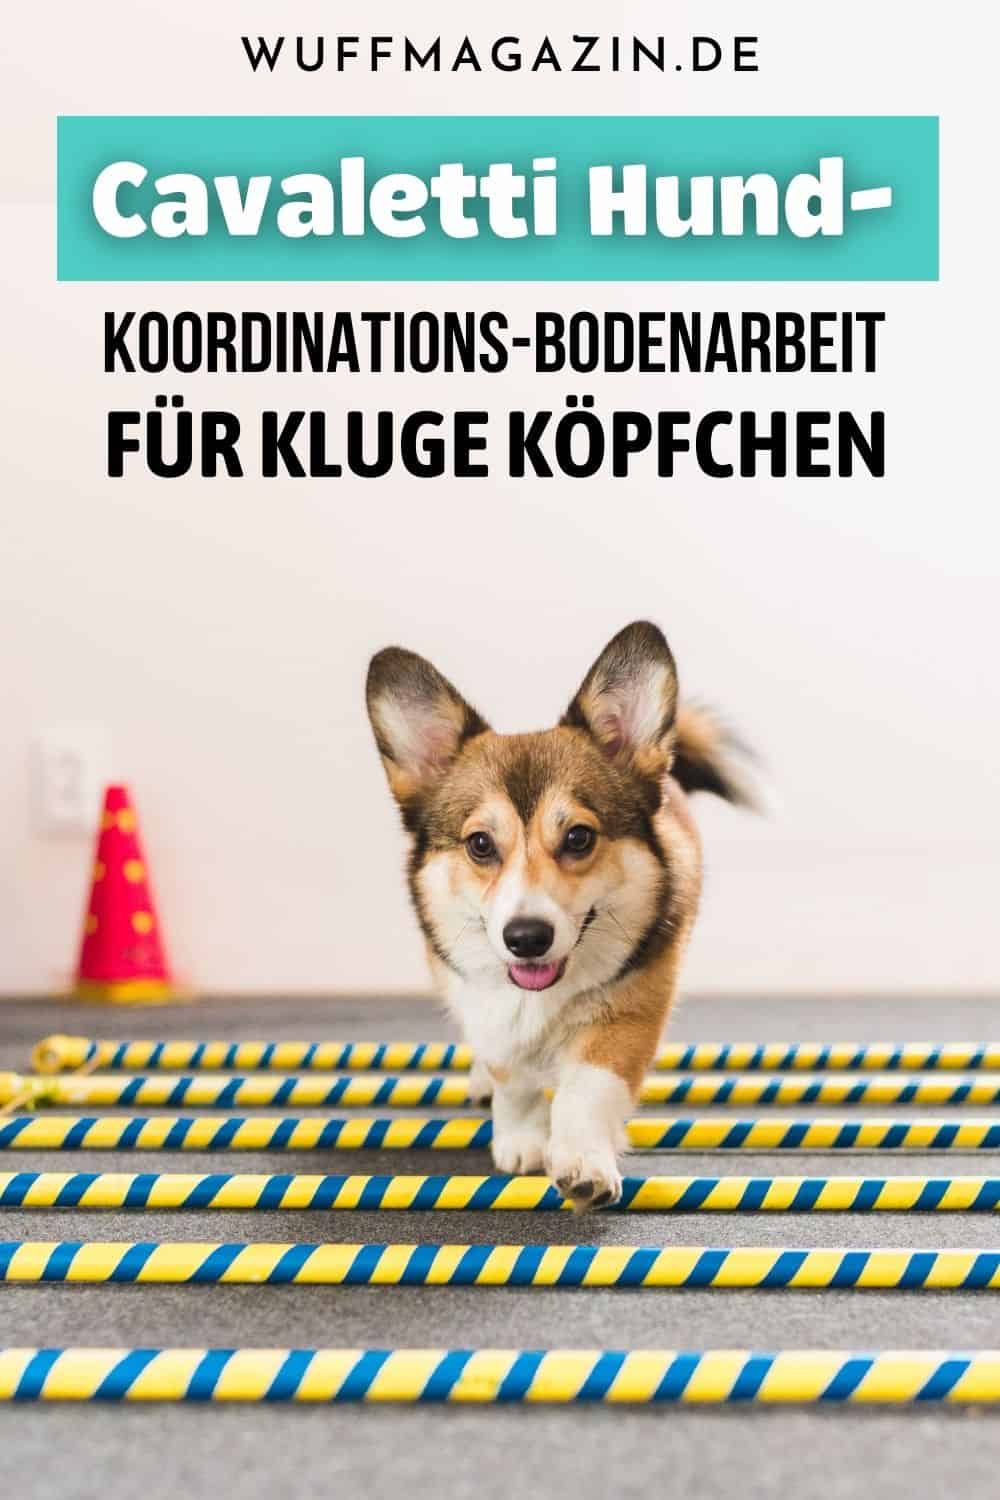 Cavaletti Hund - Koordinations-Bodenarbeit für kluge Köpfchen